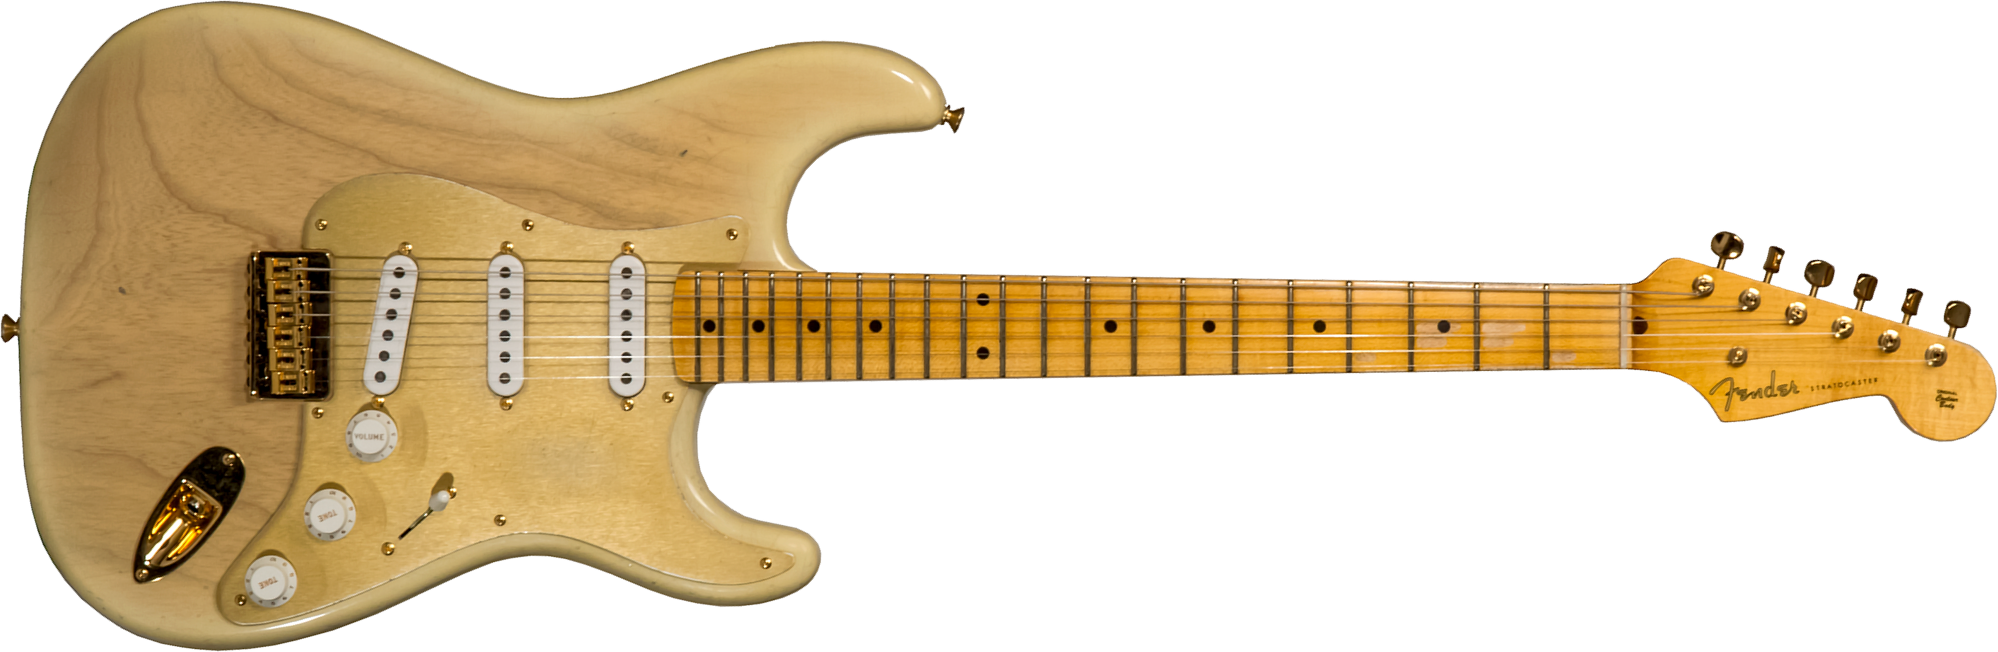 Fender Custom Shop Strat 1955 Hardtail Gold Hardware 3s Trem Mn #cz568215 - Journeyman Relic Natural Blonde - Elektrische gitaar in Str-vorm - Main pi